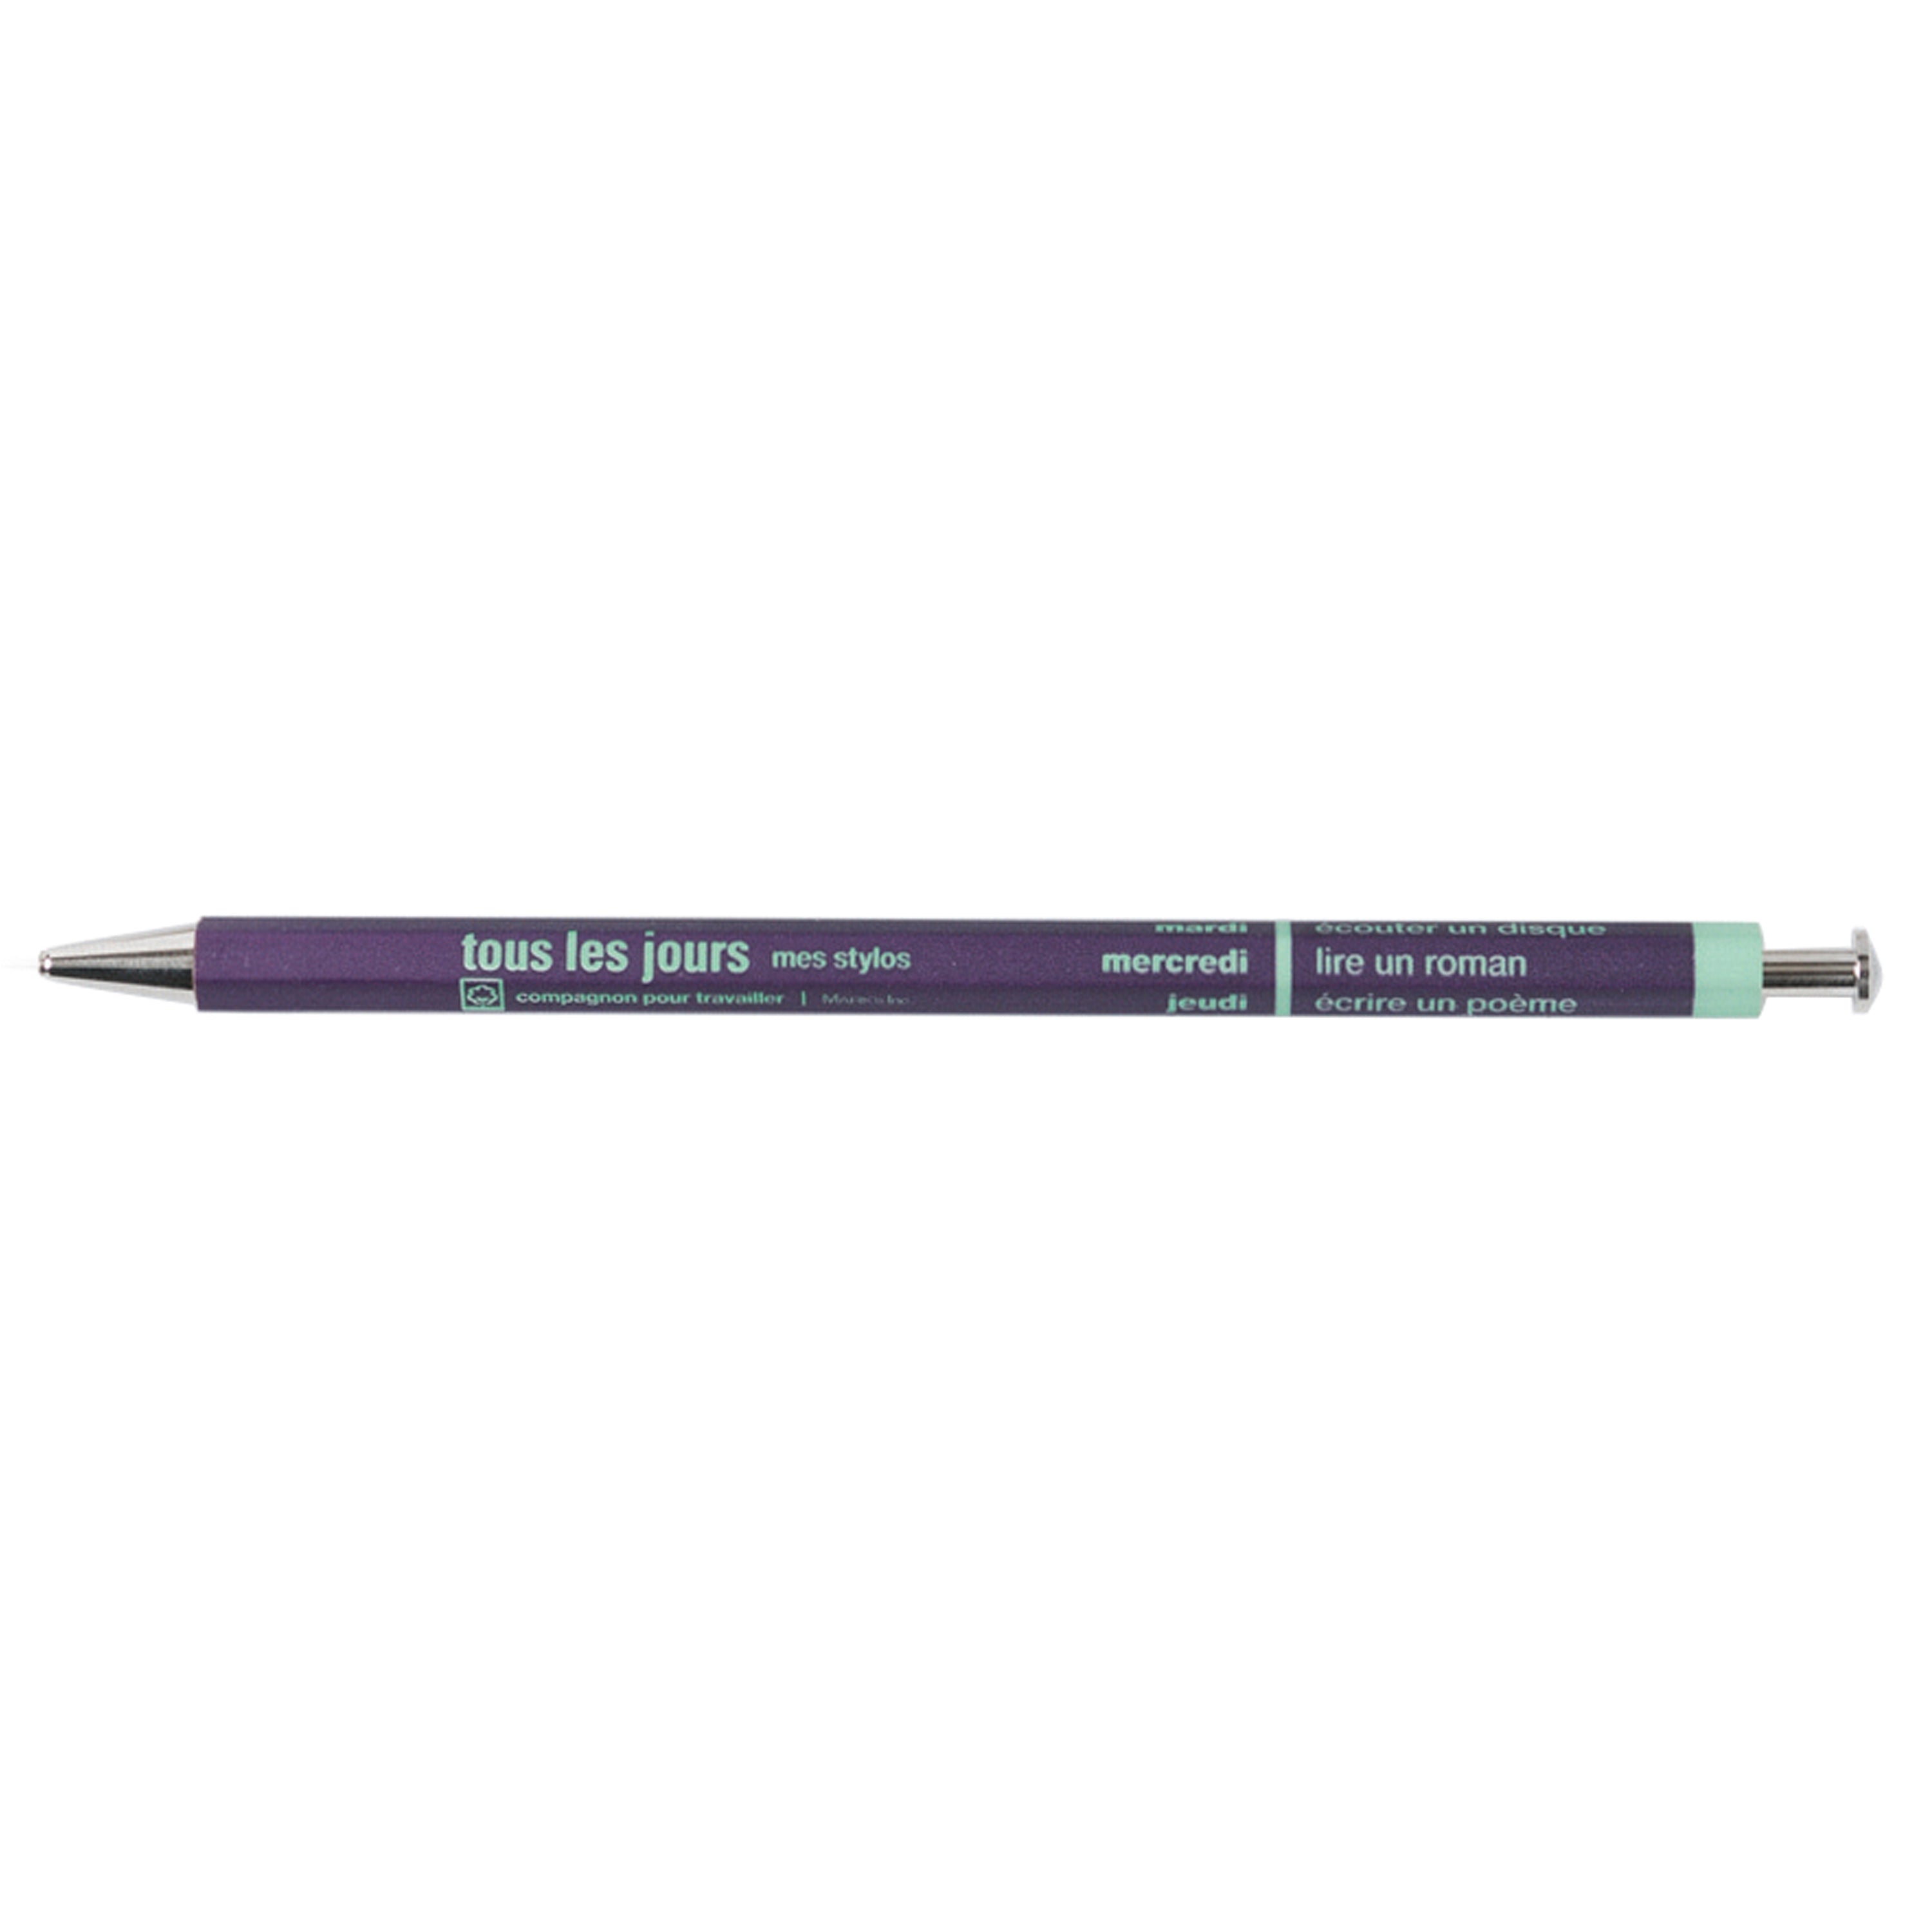 DAY Ballpoint Pen / Purple